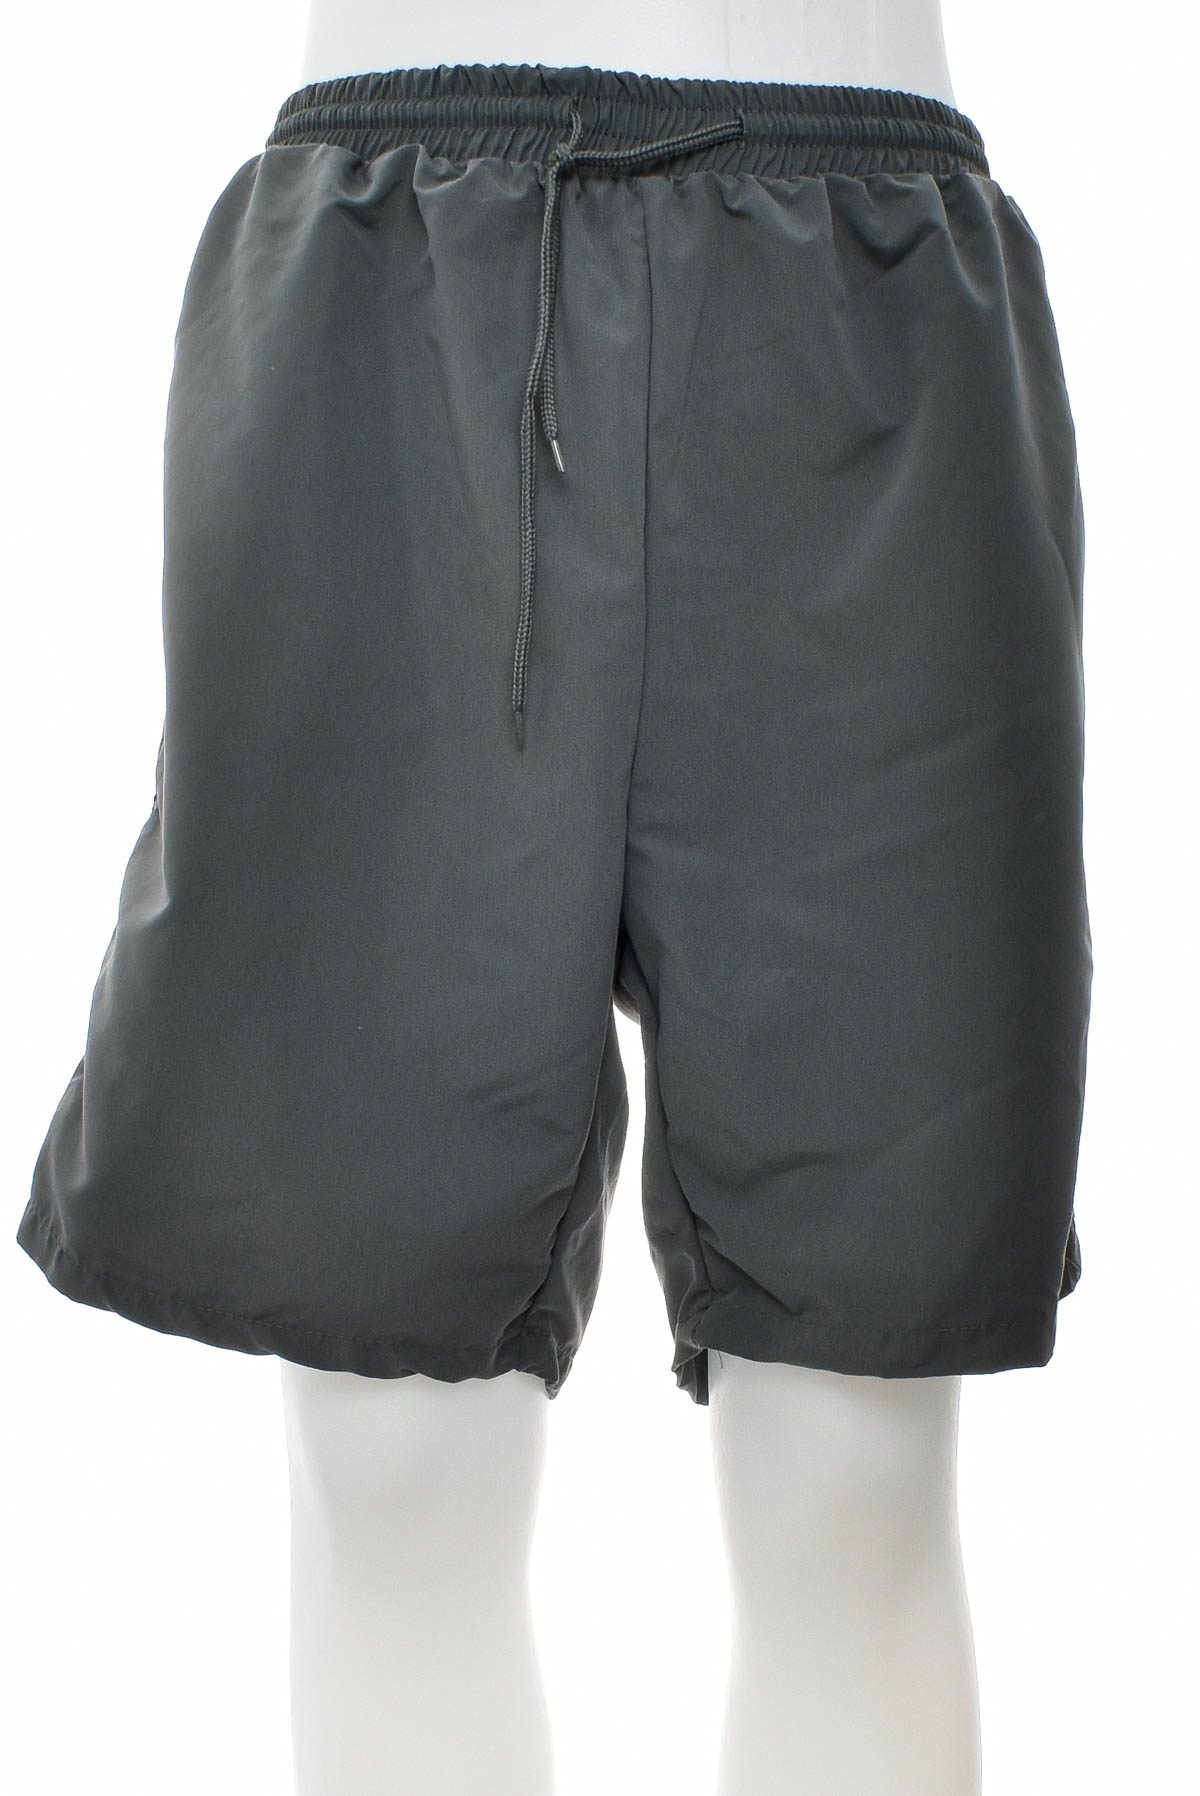 Men's shorts - ATLAS for MEN - 0